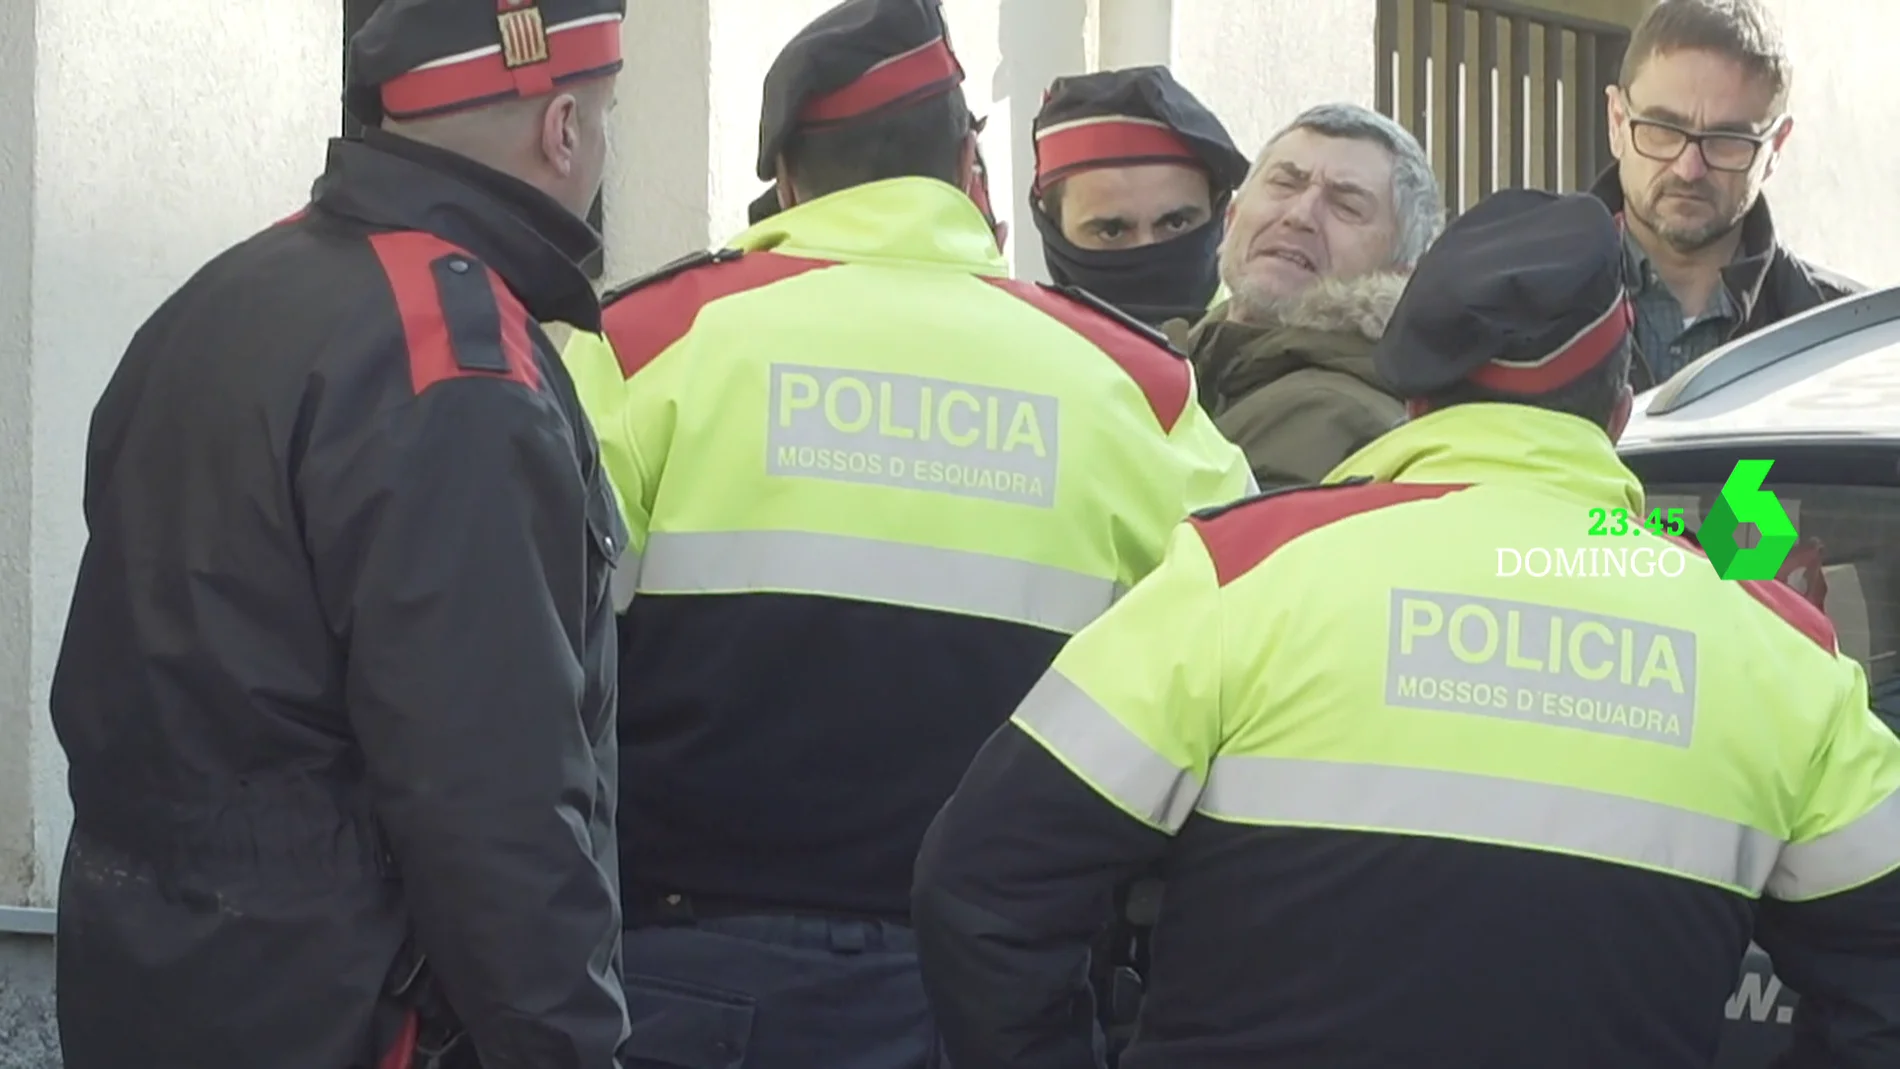 Jordi Magentí, detenido por el crimen de Susqueda